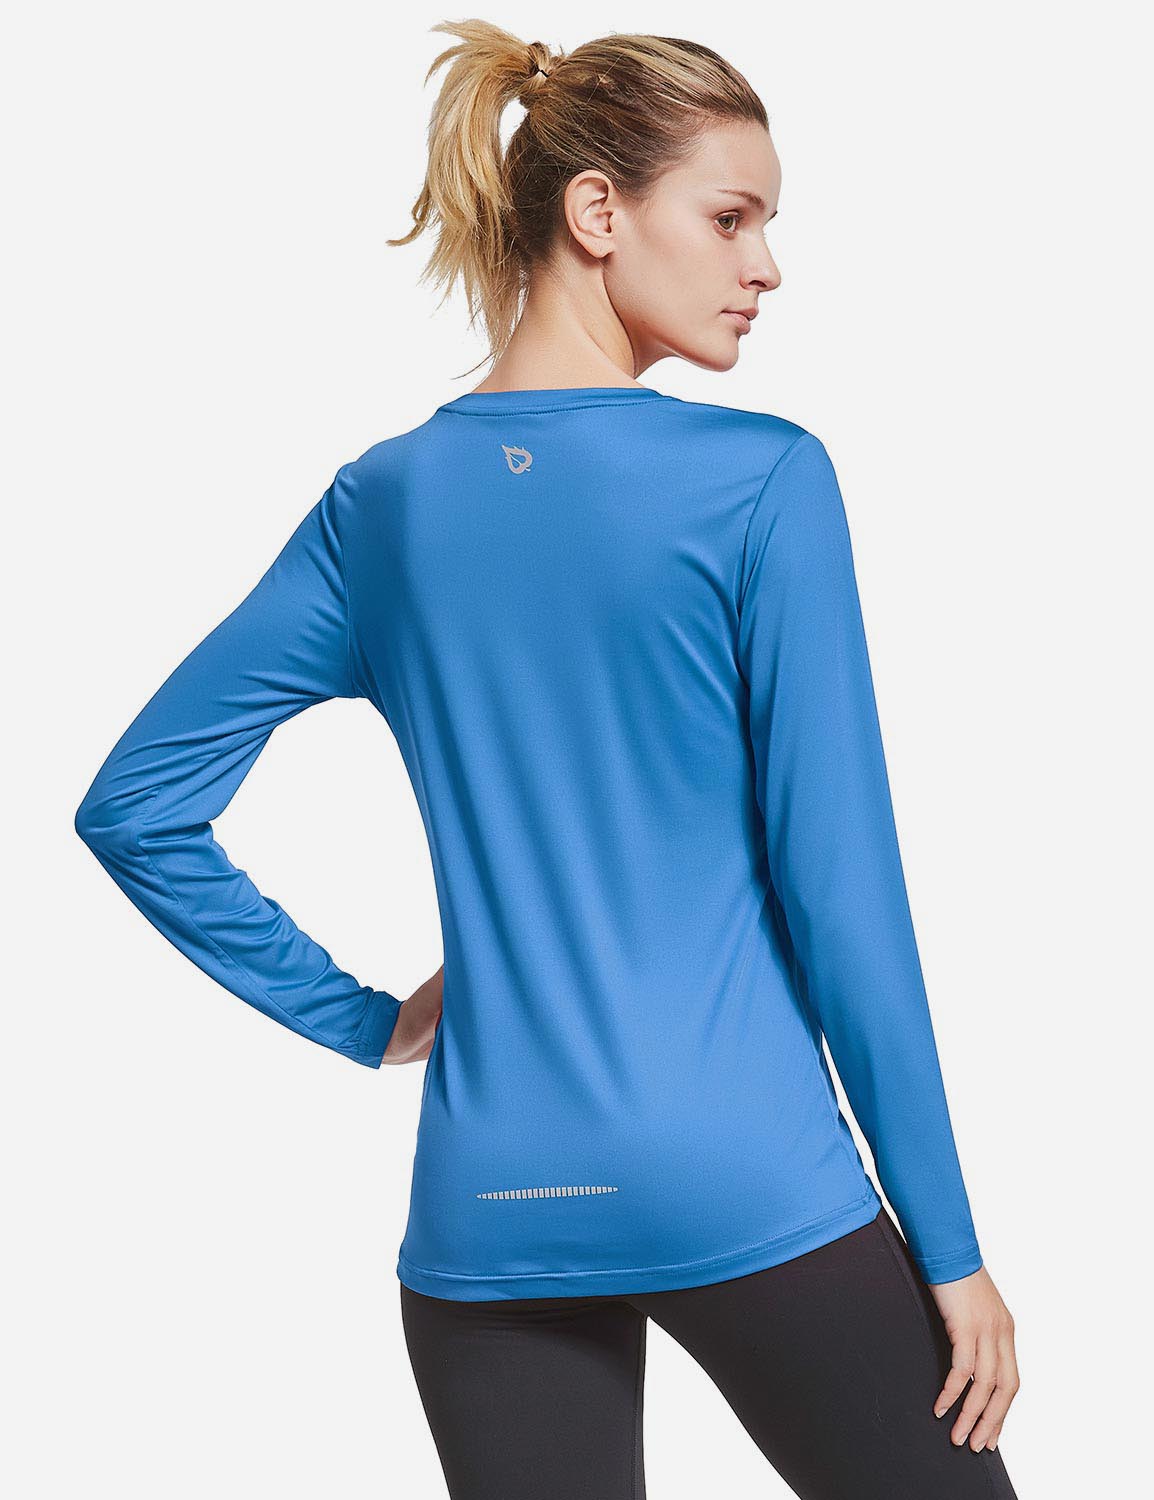 BALEAF Women's Loose Fit Tagless Workout Long Sleeved Shirt abd294 Royal Blue Back